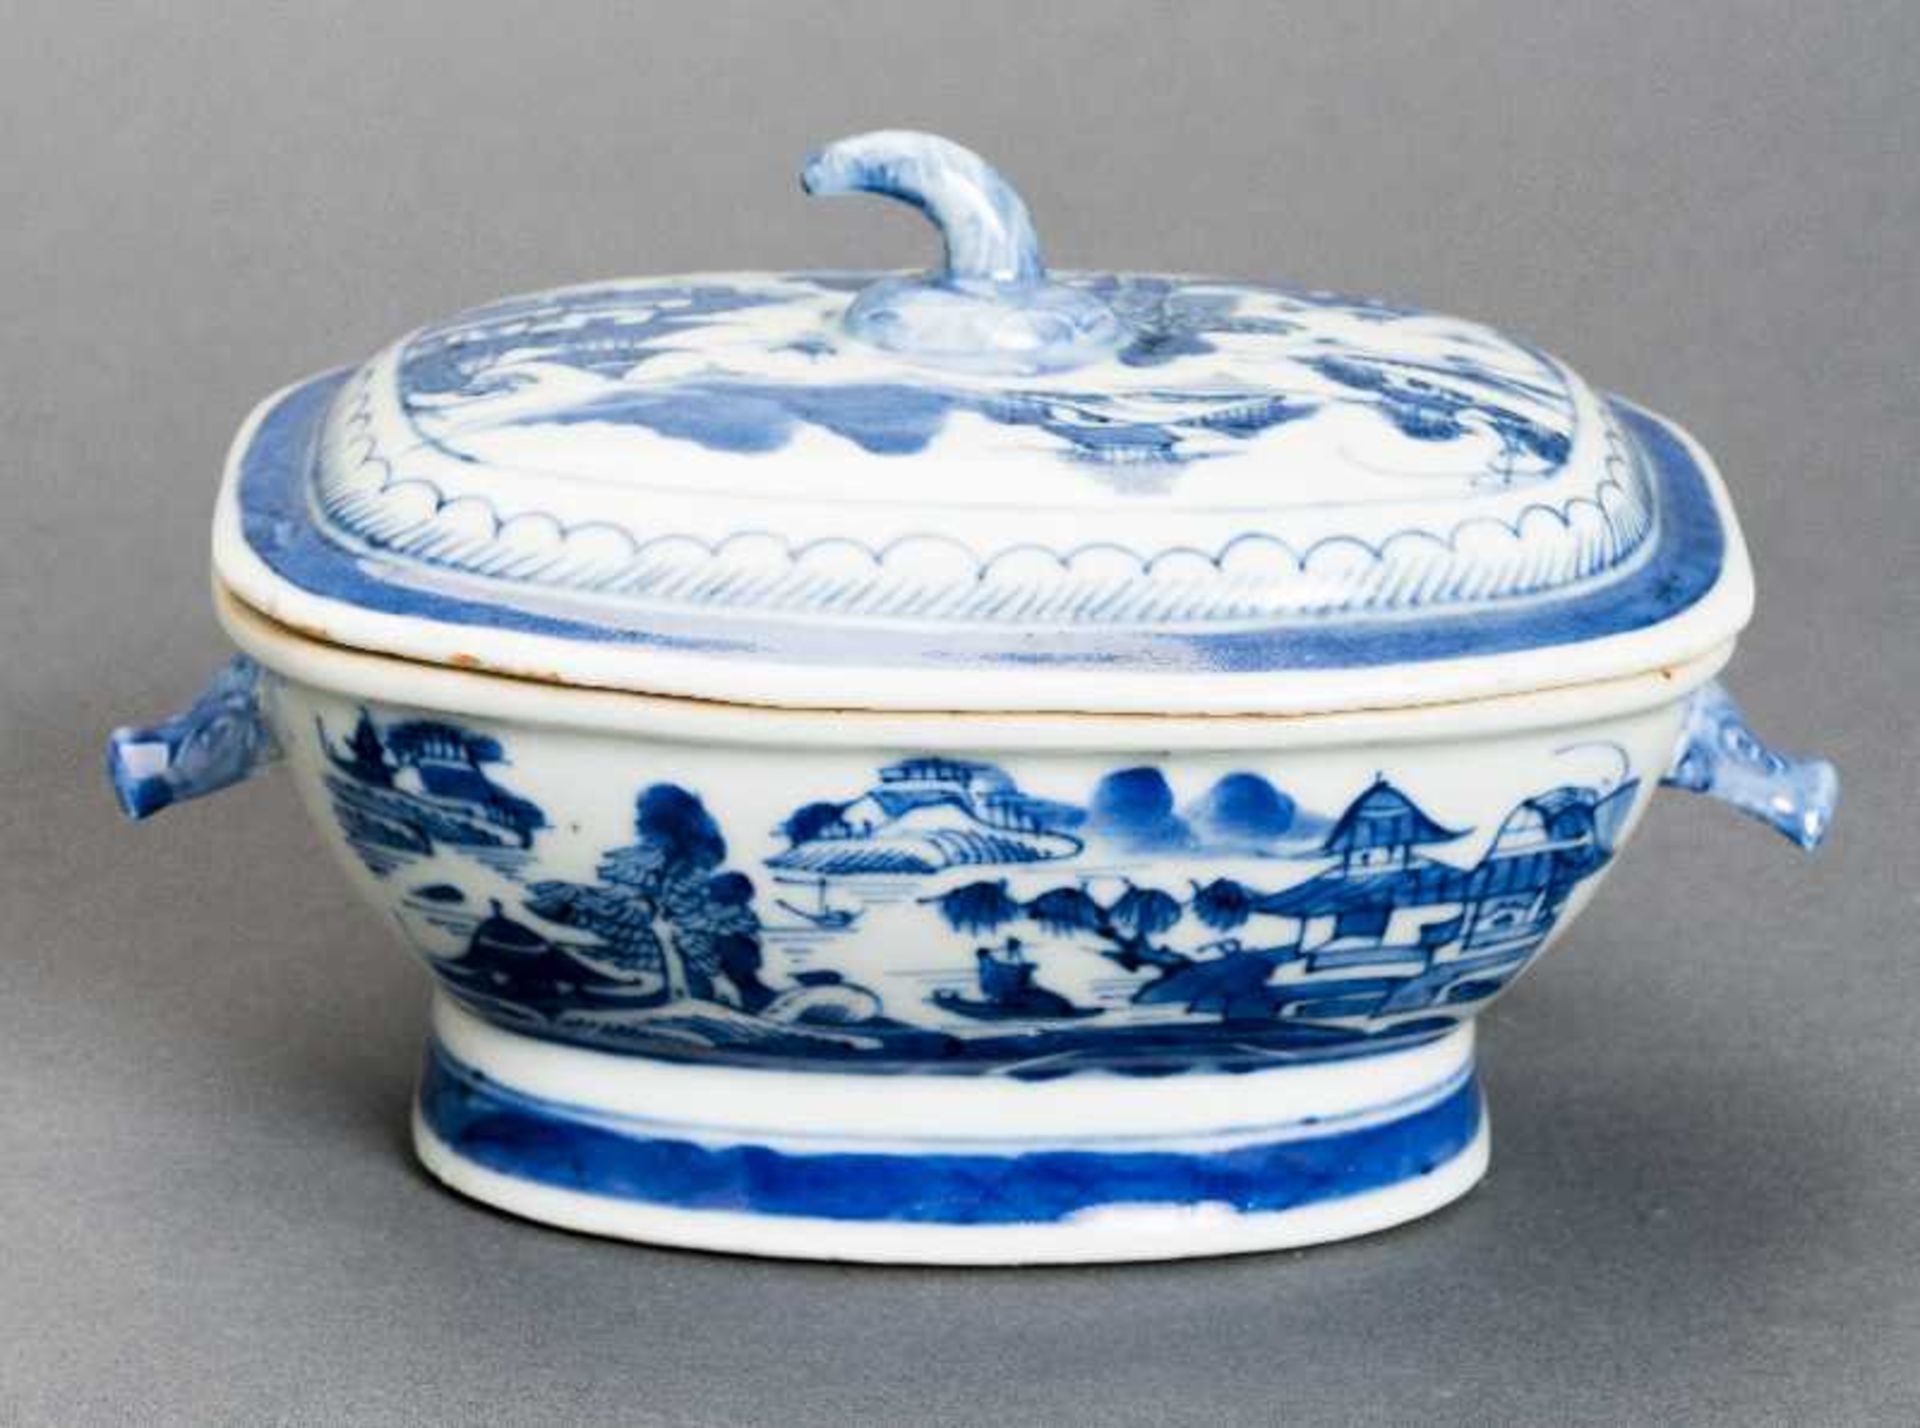 DECKELSCHALE Blauweiß-Porzellan. China, Qing-Dynastie, 19. Jh. Diese sehr ansprechende oval- - Bild 5 aus 6